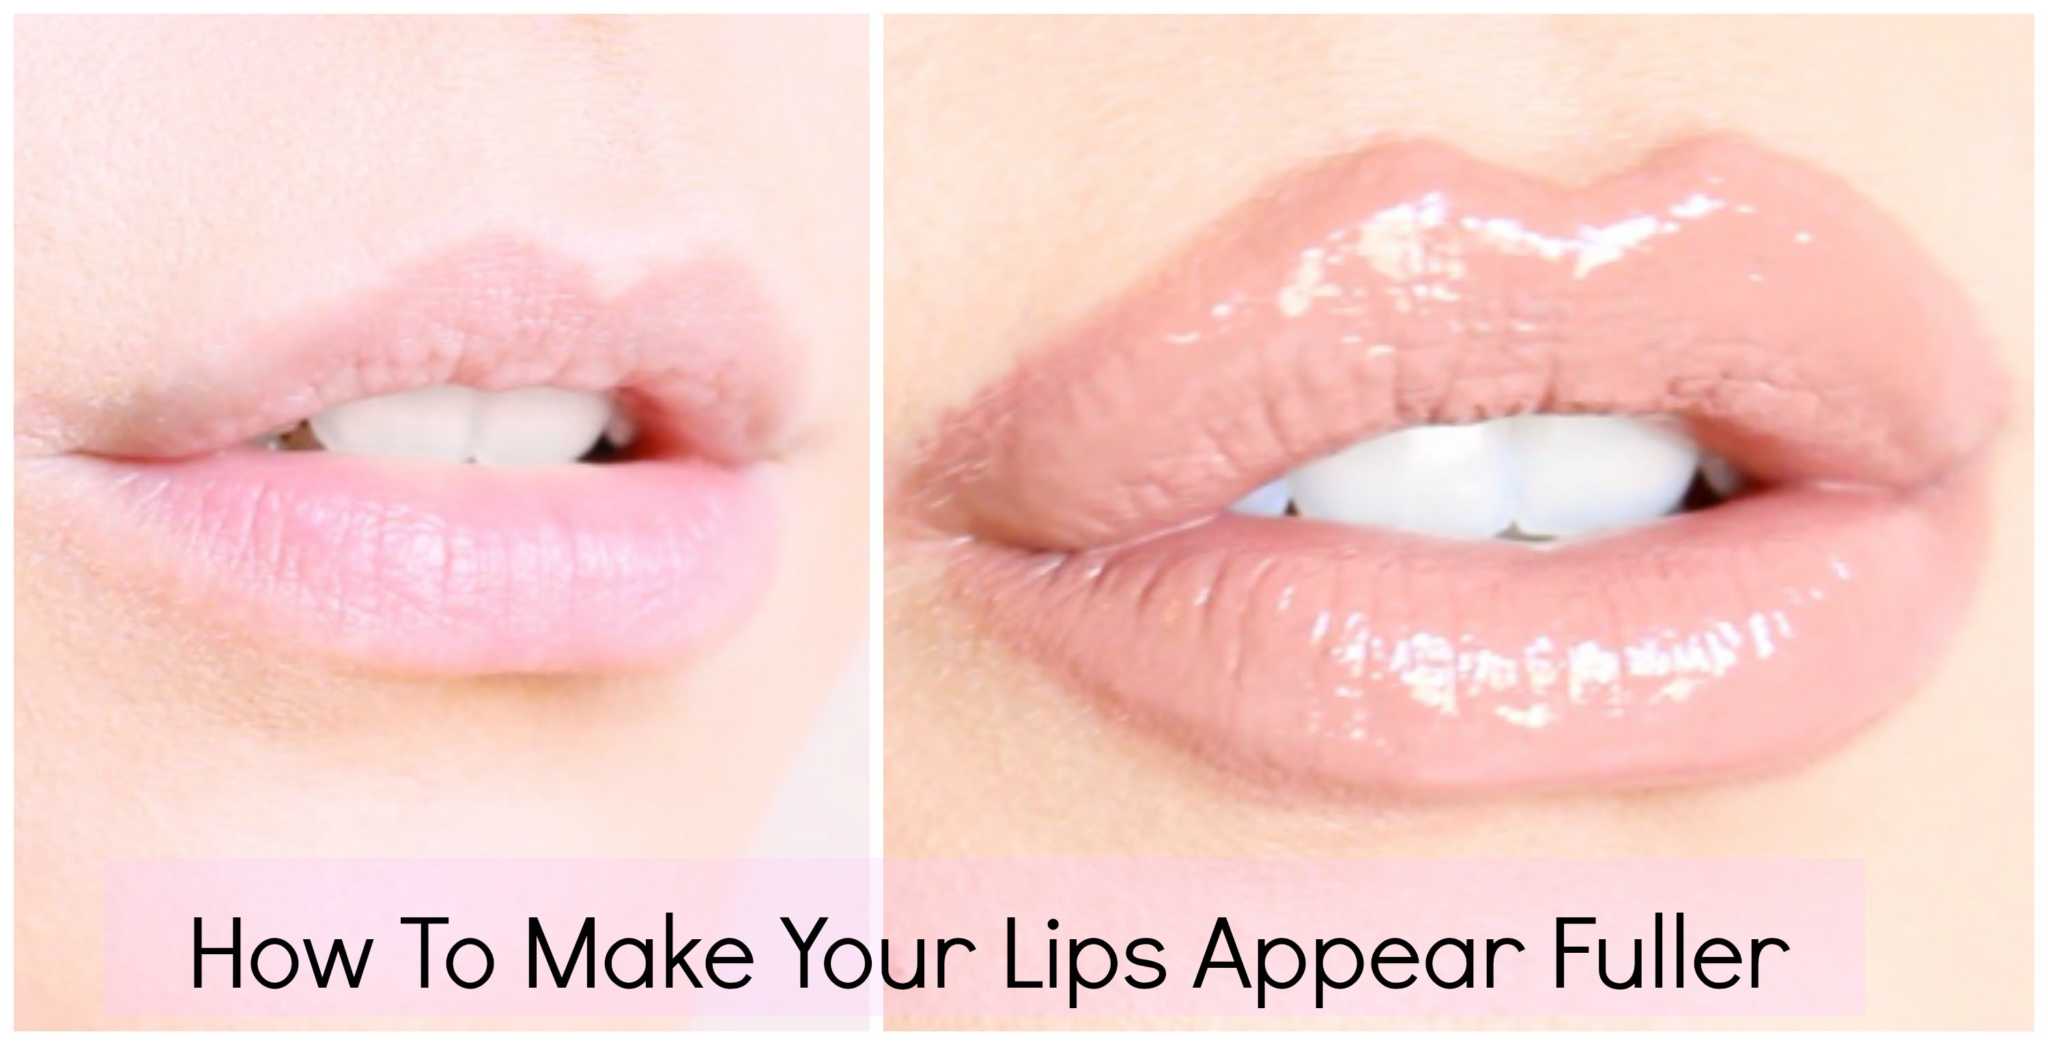 Lips Appear Fuller